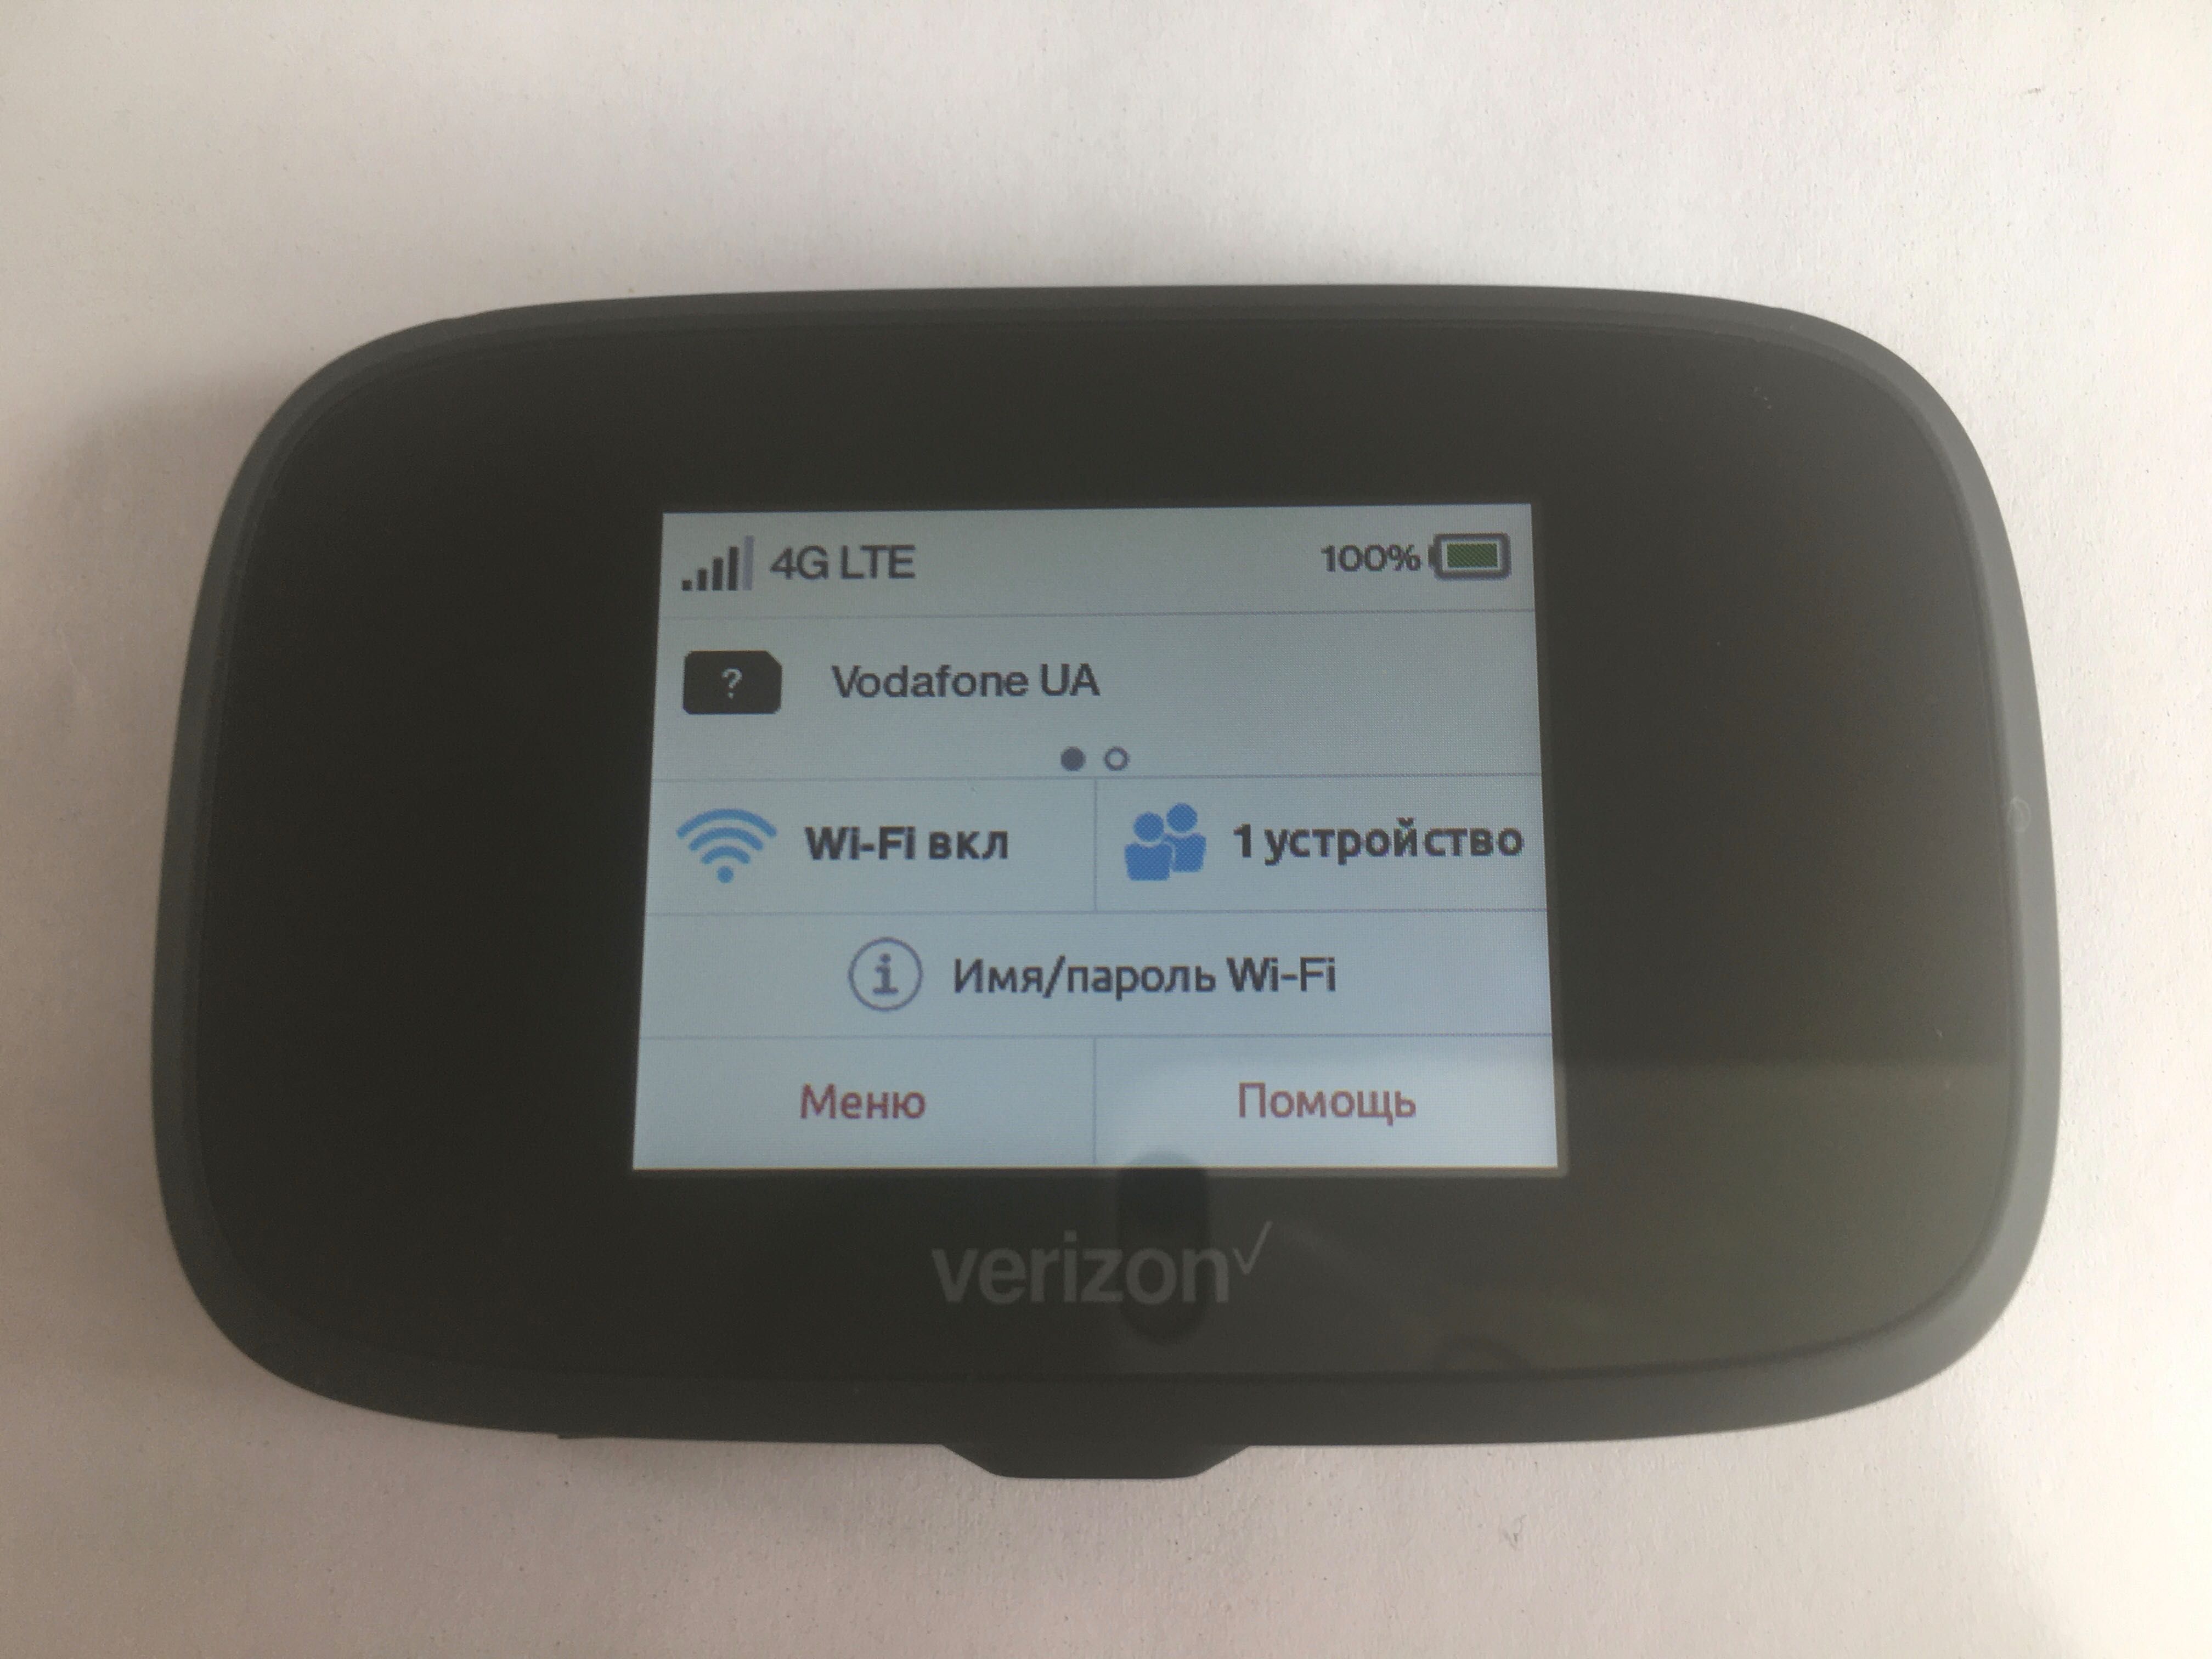 4G LTE WI-Fi роутер под все сим карты меню на украинском и русском